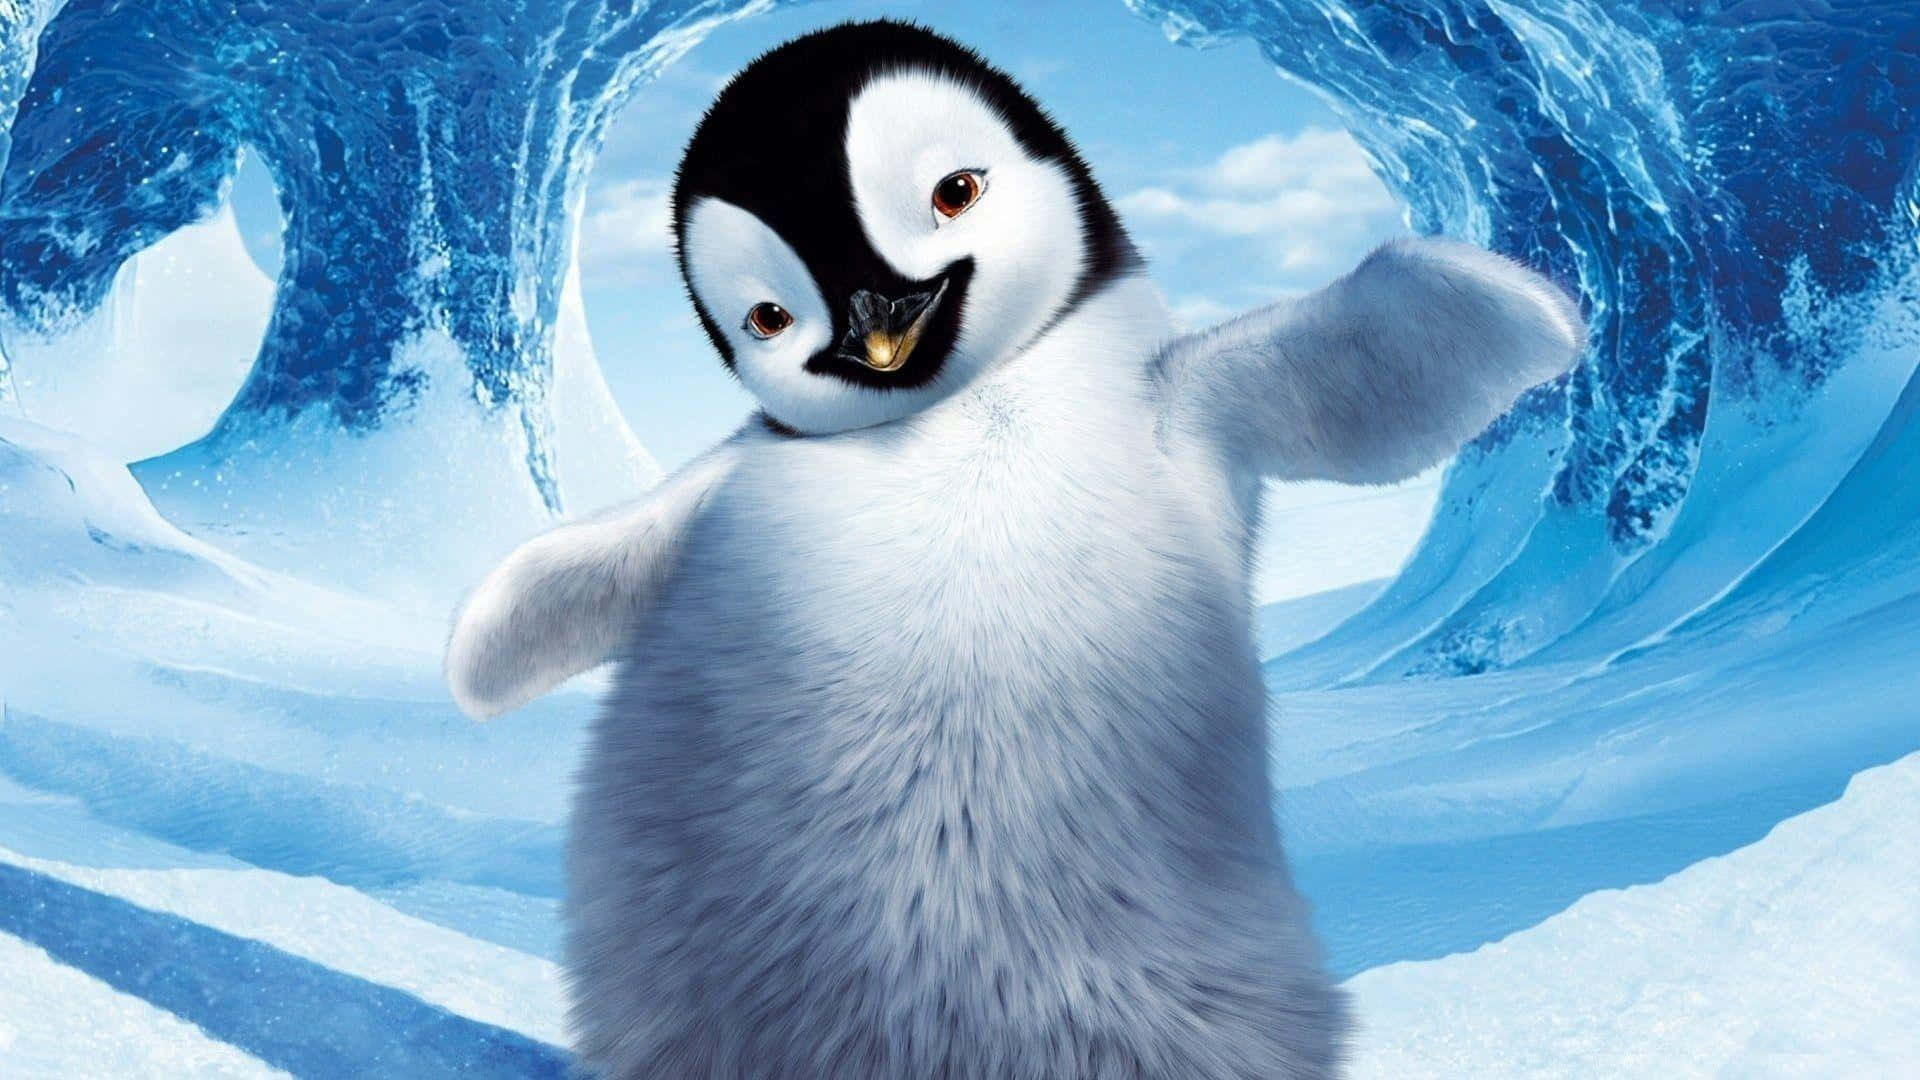 Baby Penguin Pictures Wallpaper